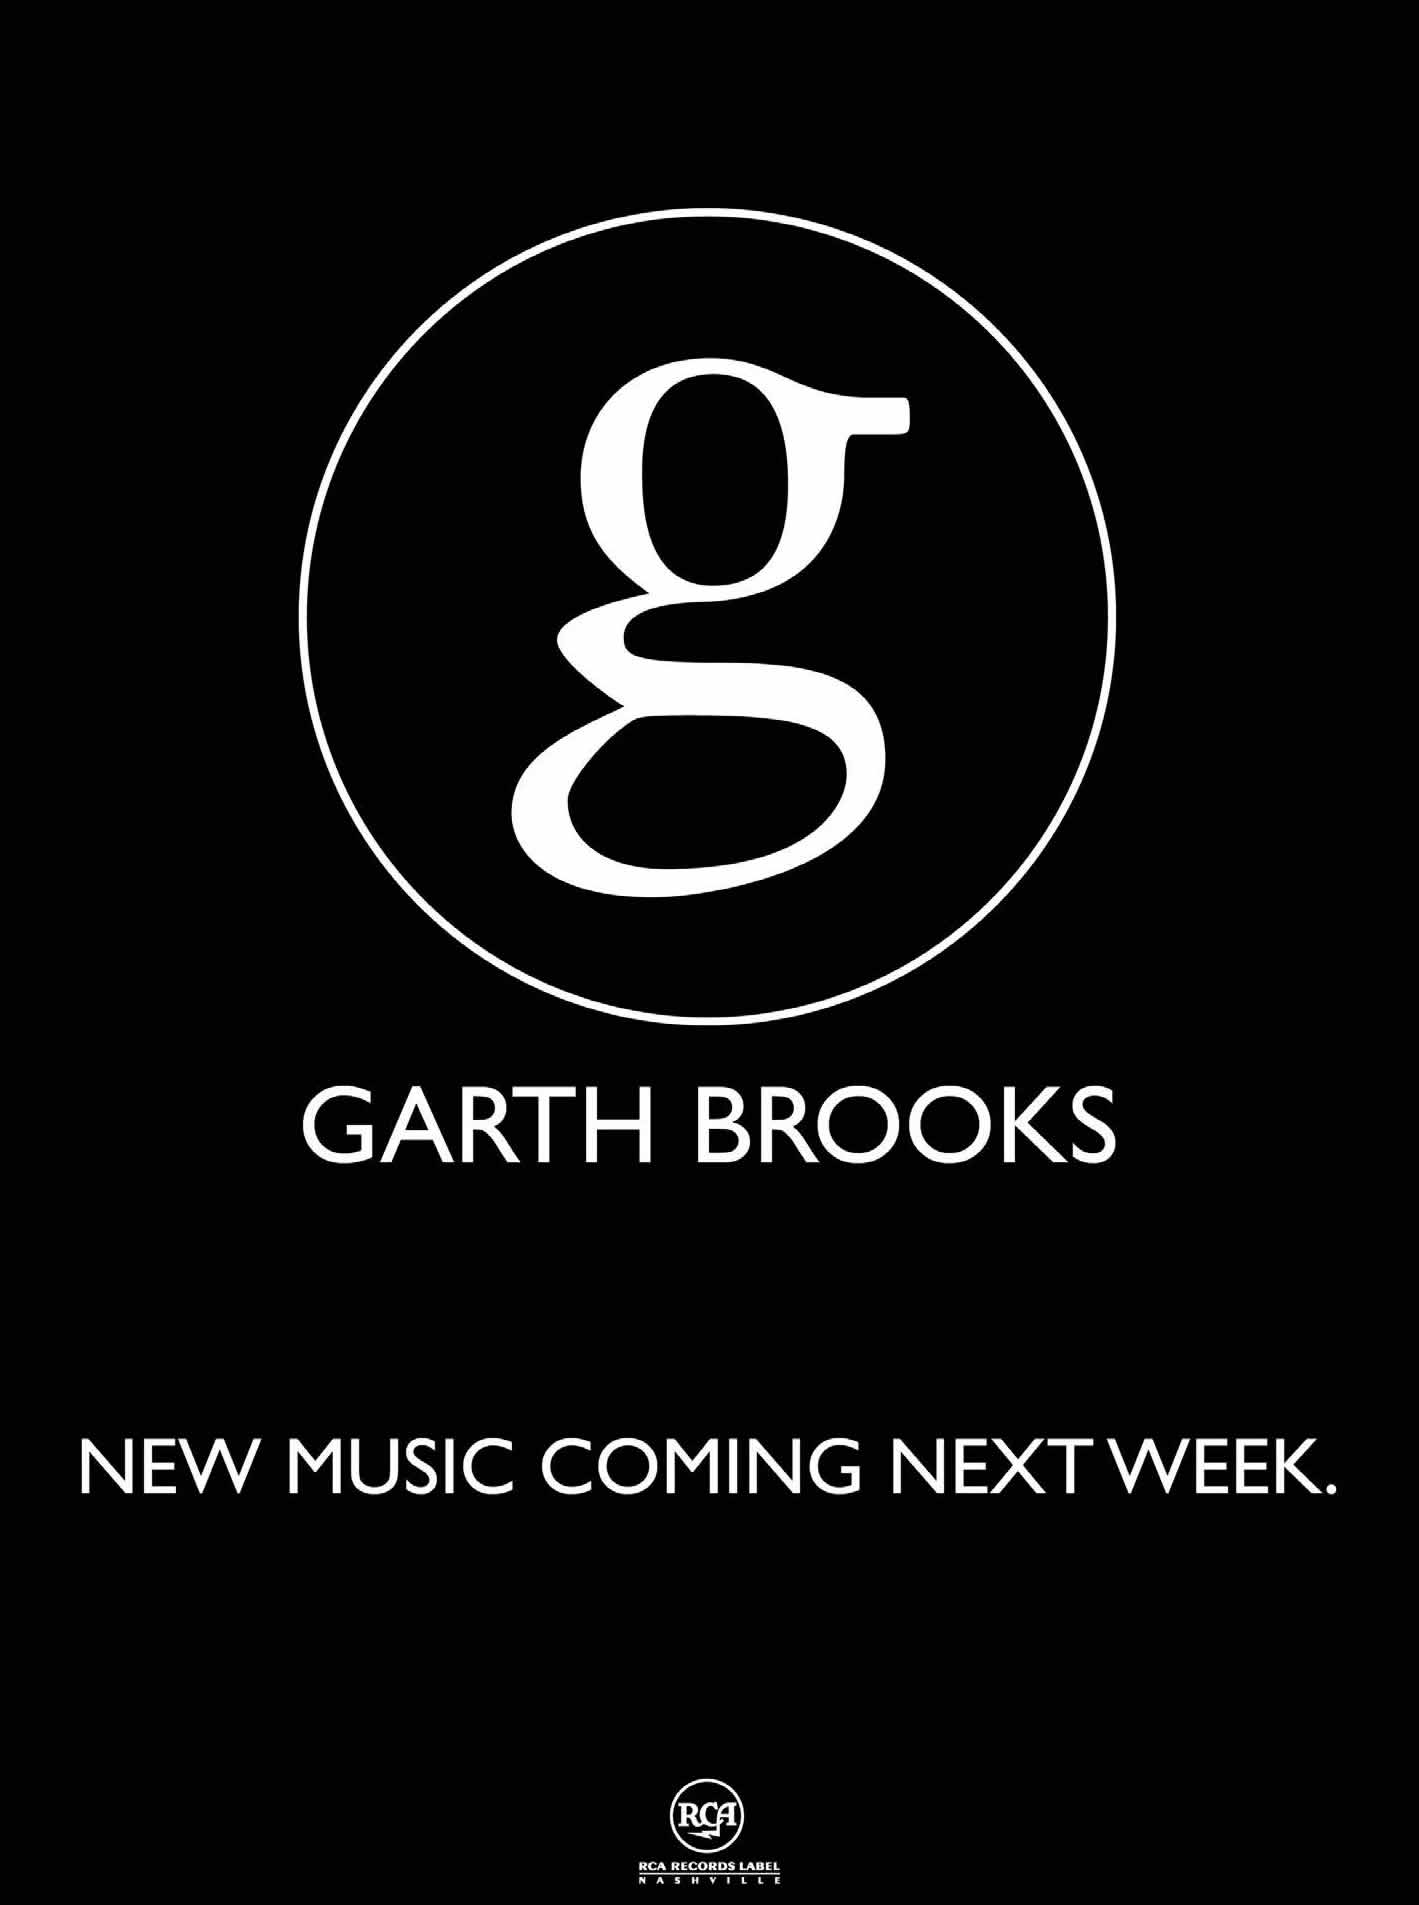 Garth brooks Logos